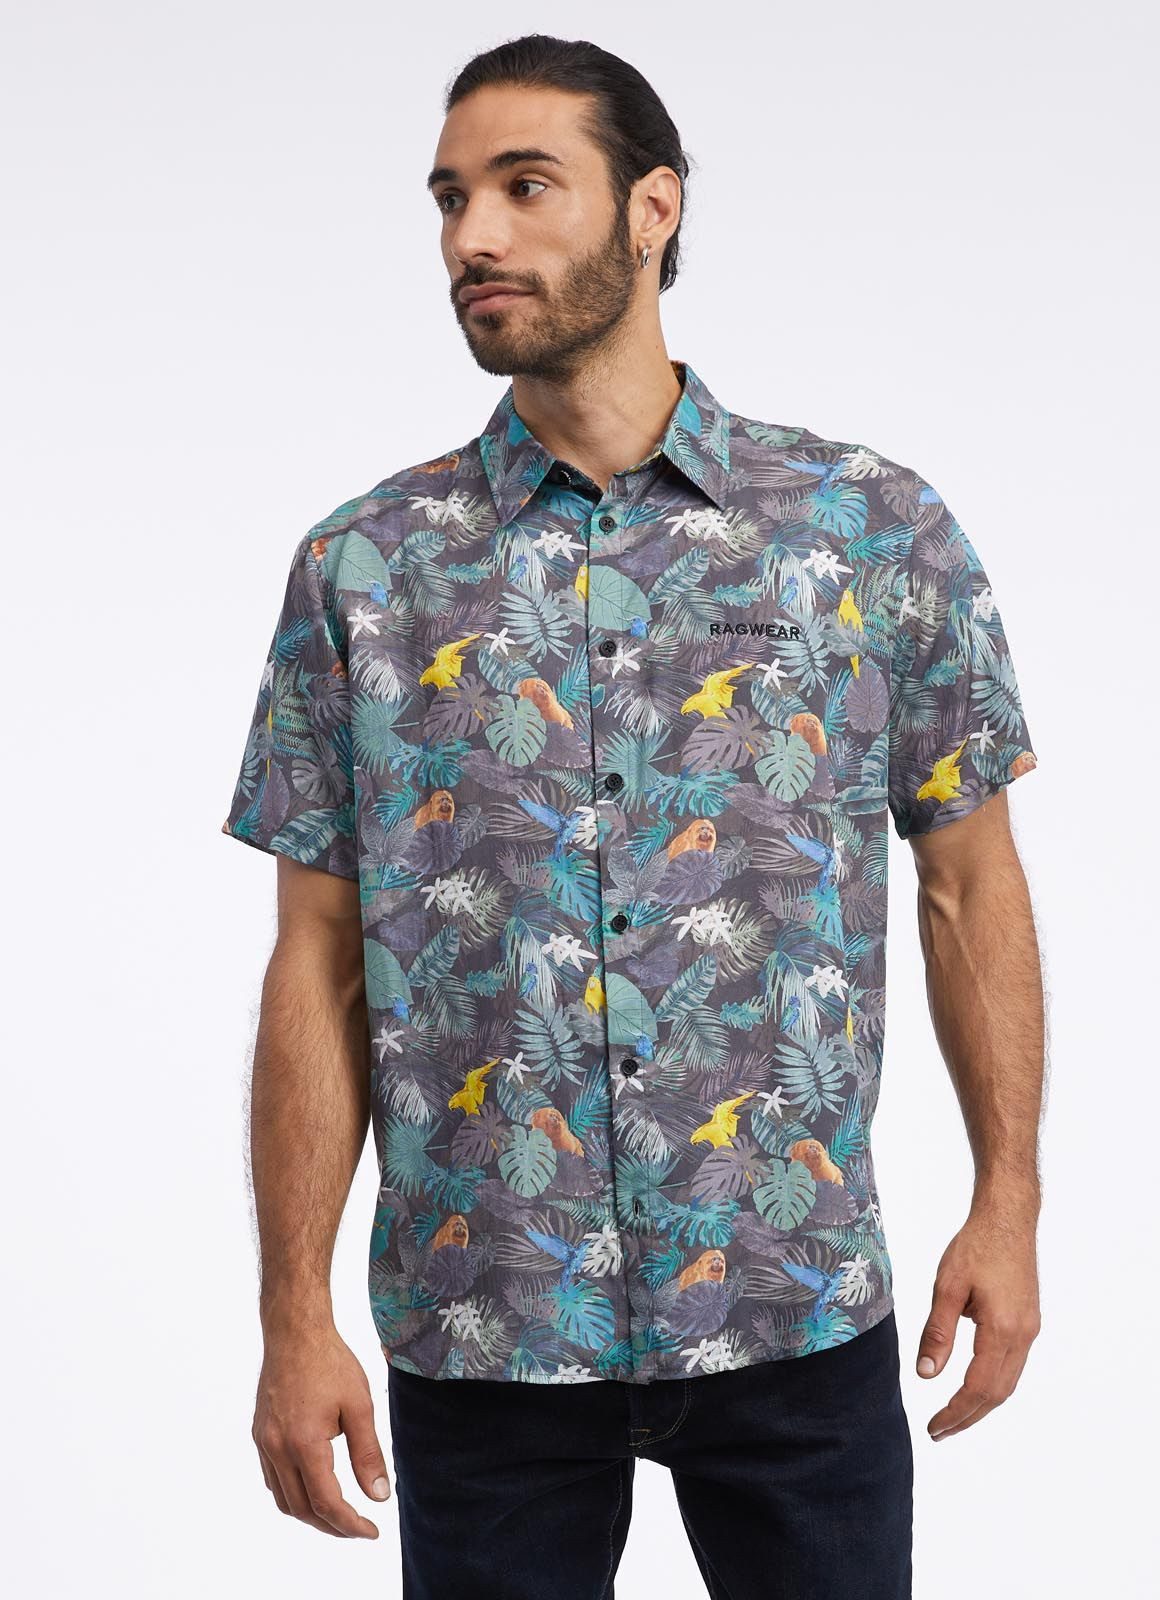 Ragwear Hawaiihemd - Kurzarm Hemd - sommerliches Freizeithemd